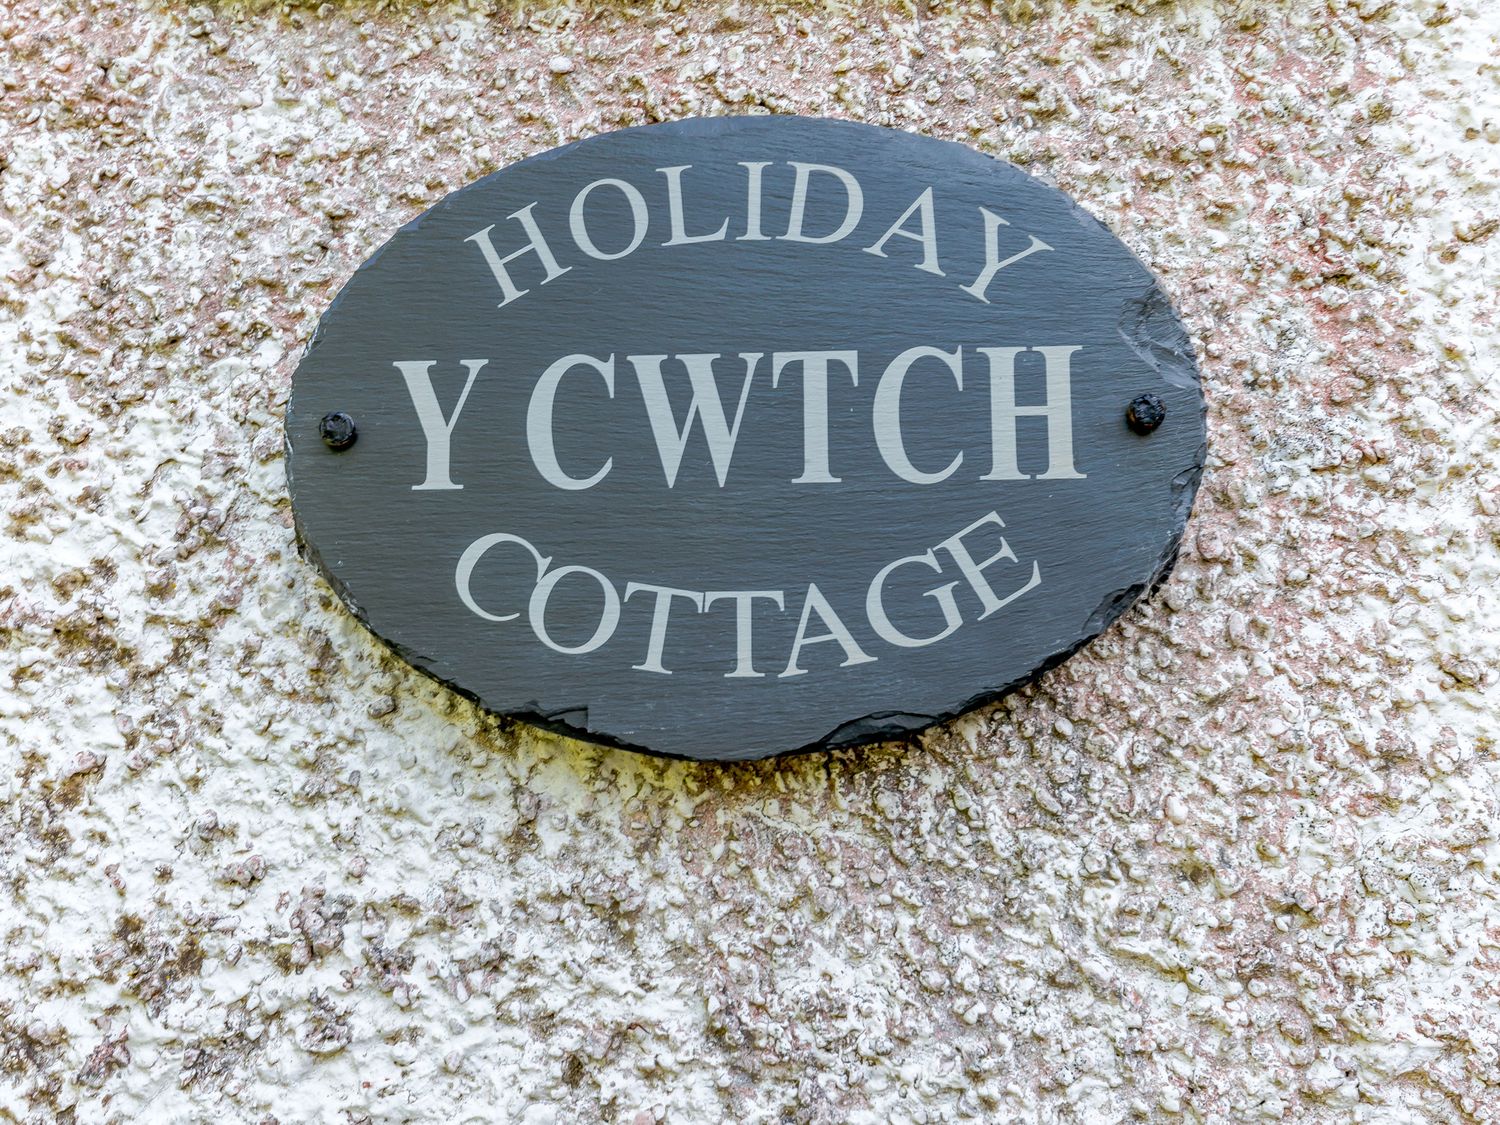 Y Cwtch, Wales